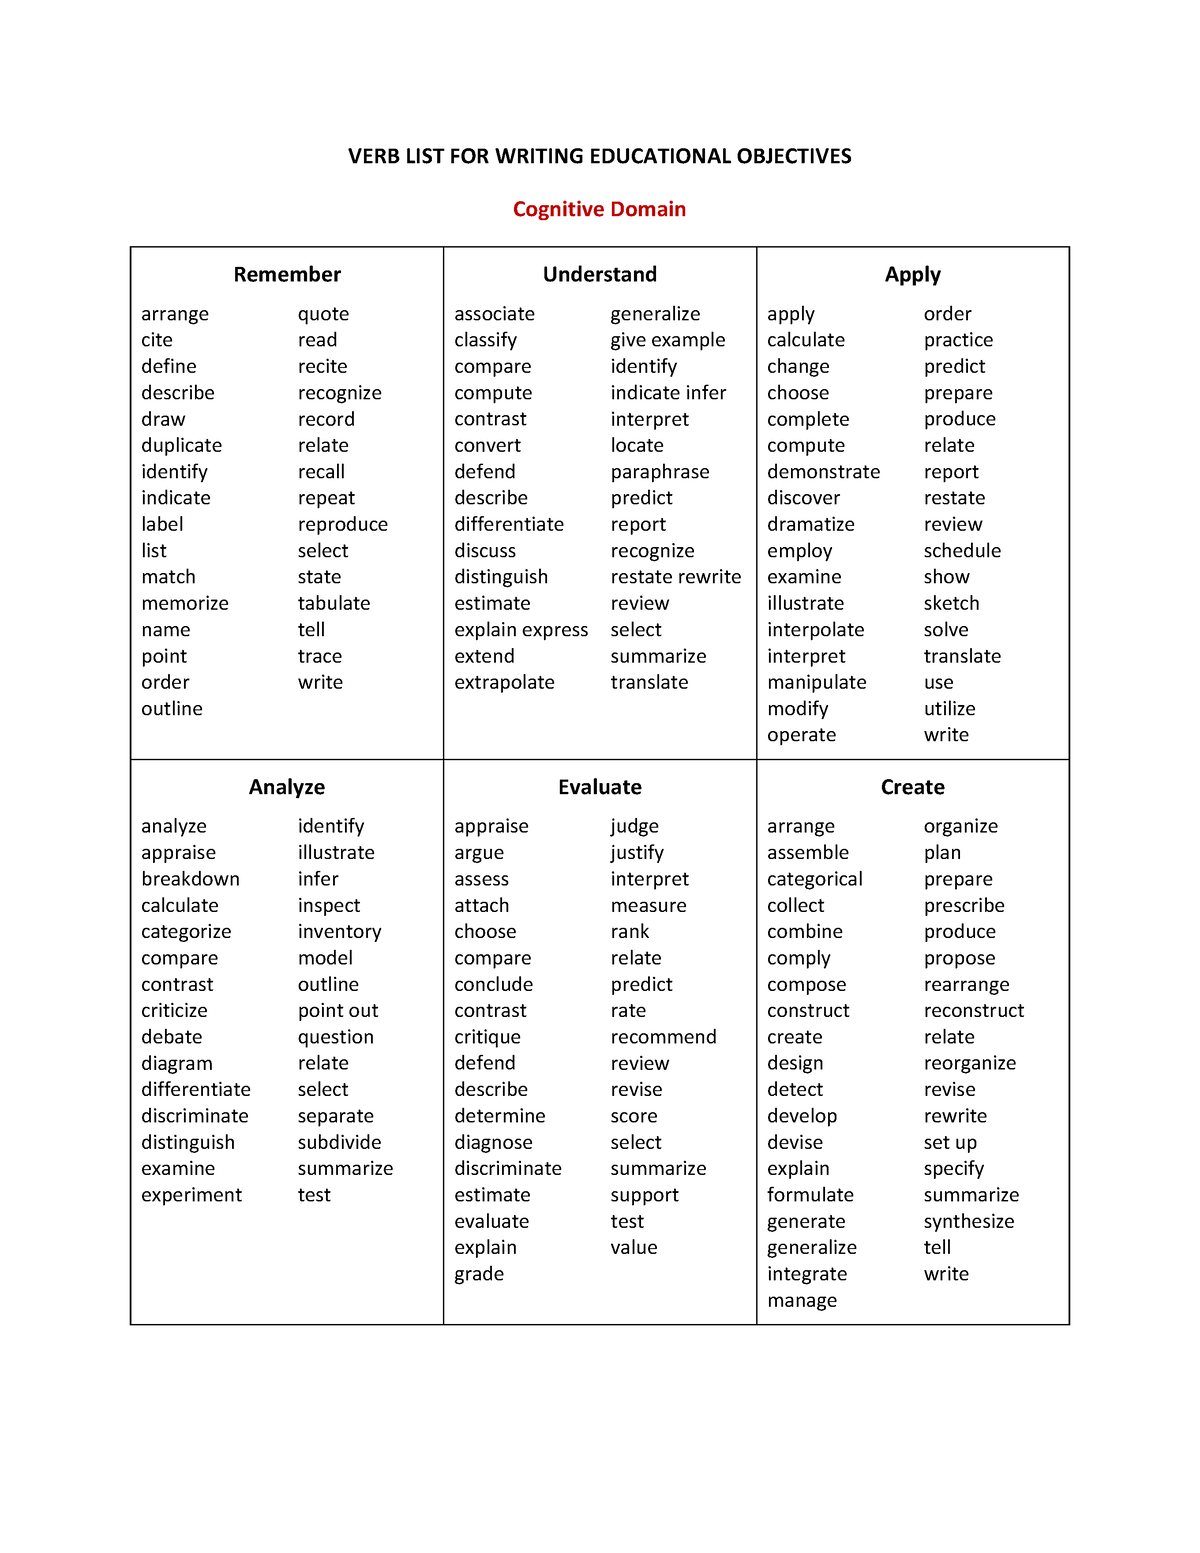 verbs-checklist-this-is-a-verb-check-list-verb-list-for-writing